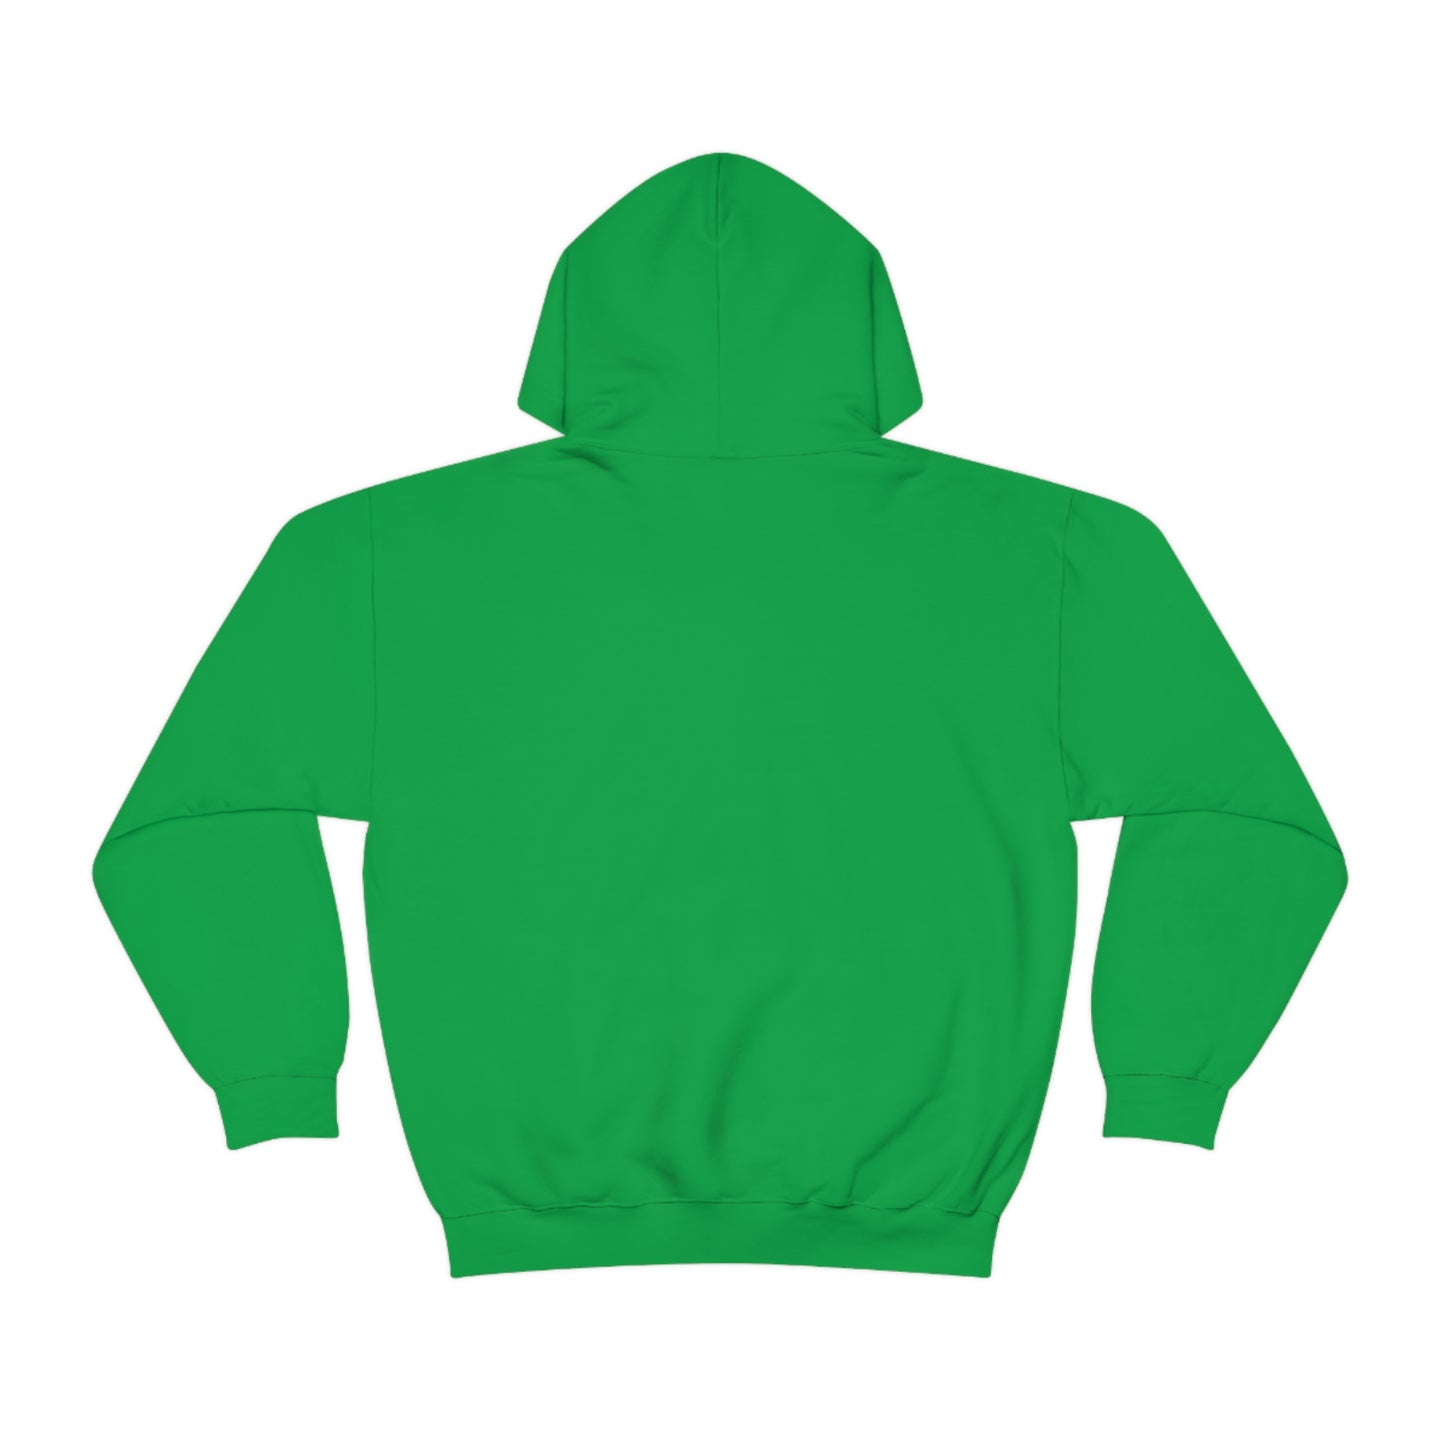 Eat Sleep Pride Repeat Unisex Heavy Blend™ Hooded Sweatshirt